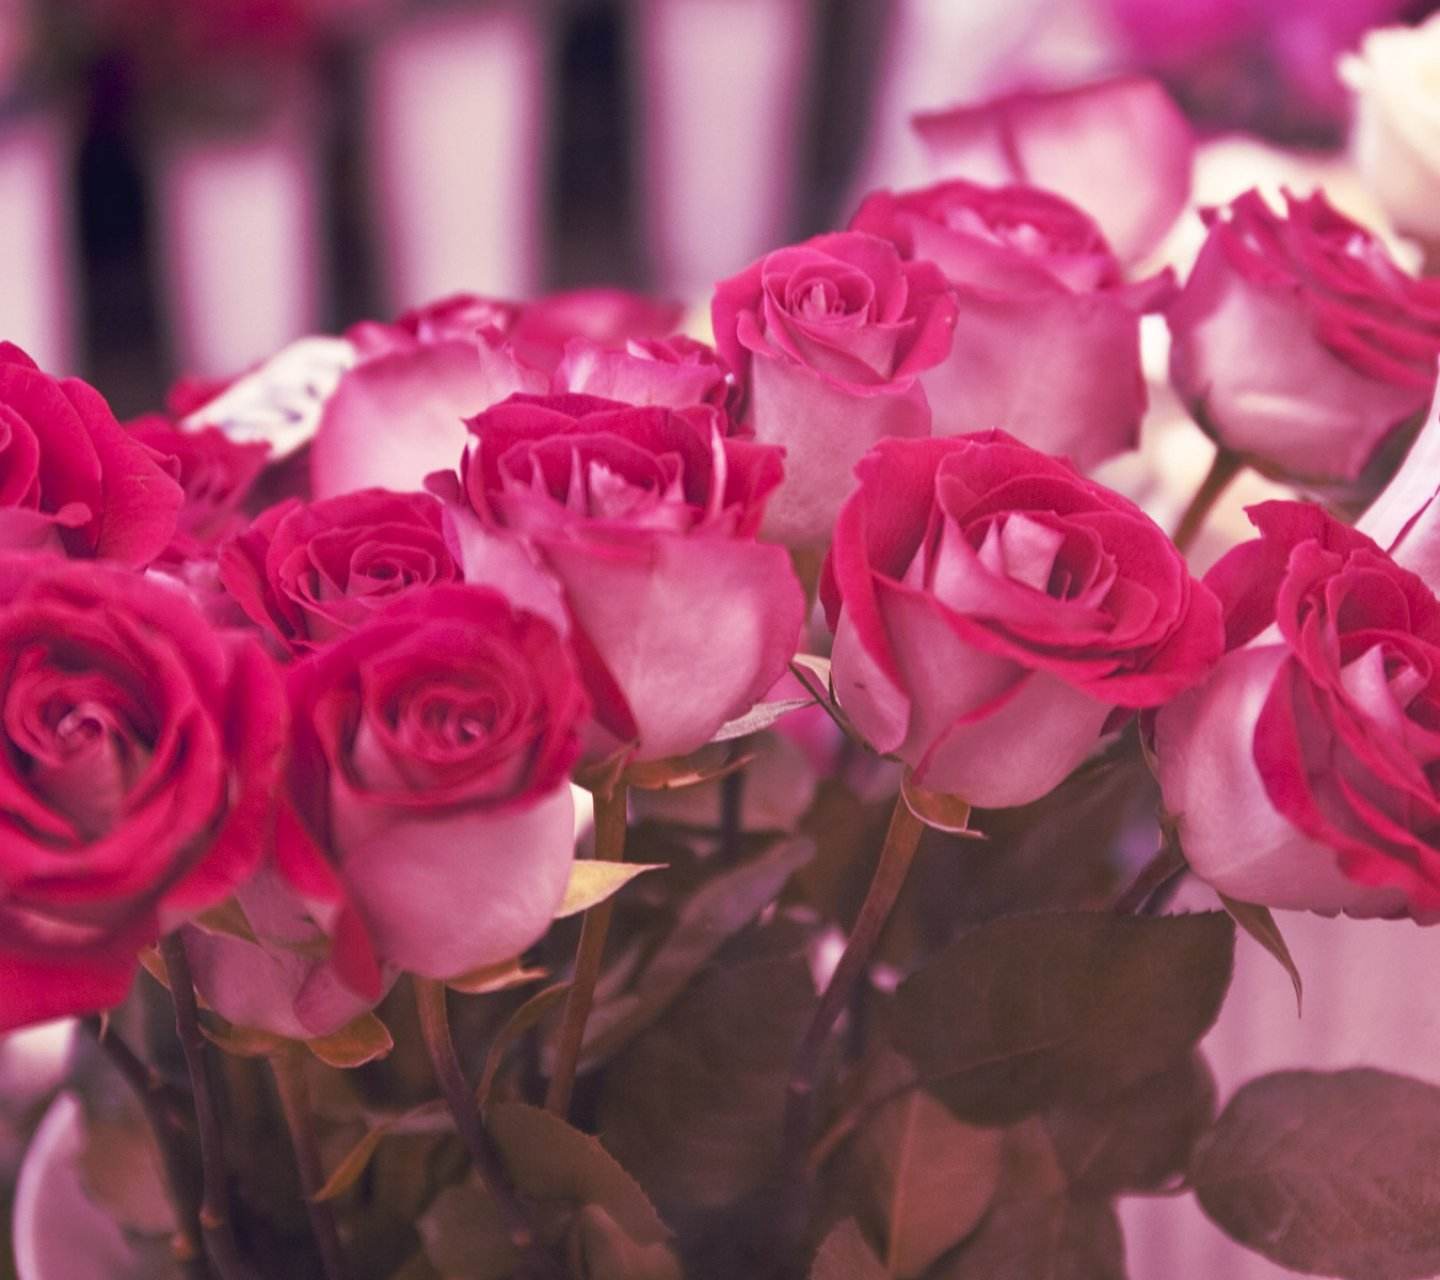 晨露打湿了花瓣,令玫瑰折射出饱含能量的动人光彩,沁人的芬芳,恰似